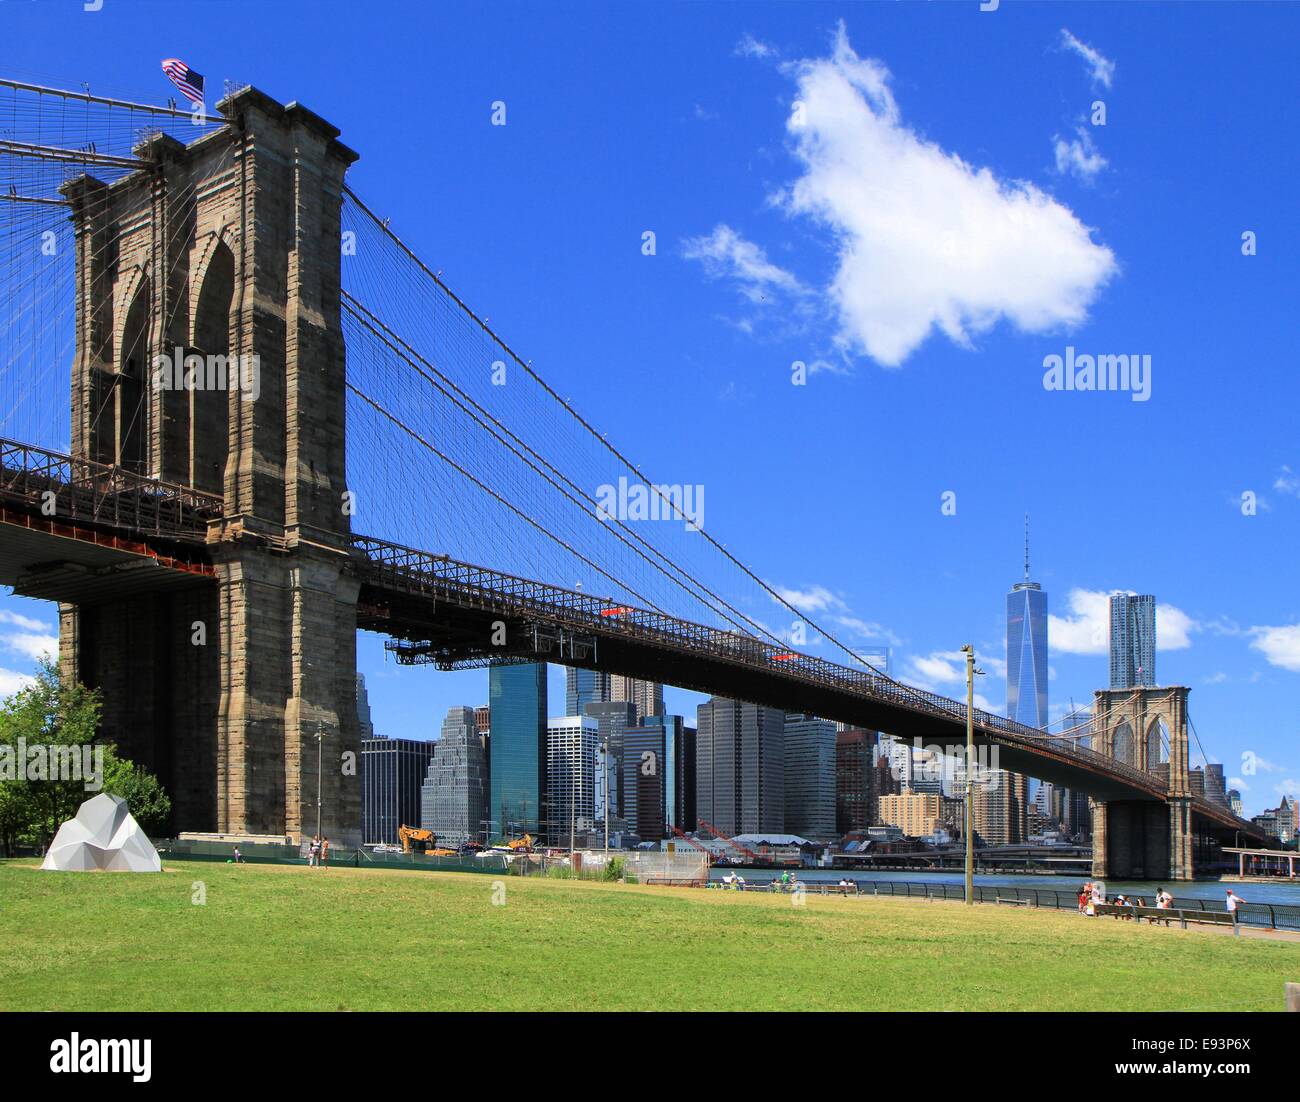 Vue panoramique du pont de Brooklyn, New York City, USA Banque D'Images